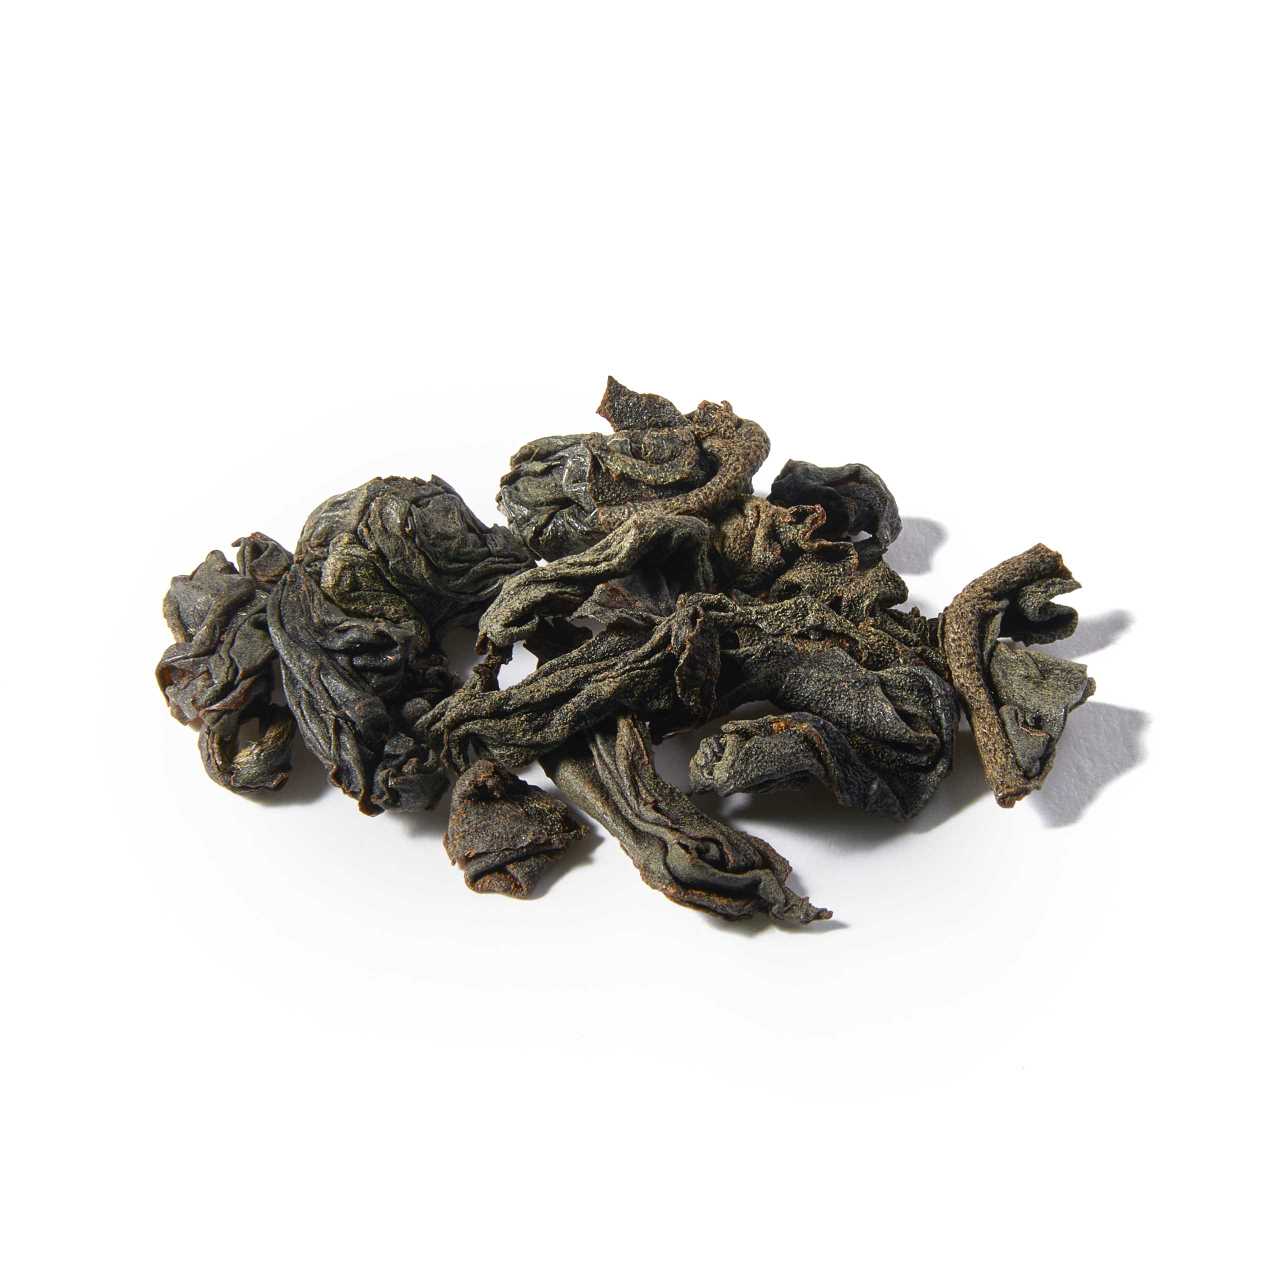 A macro pile of Ceylon Luxurious Pekoe Loose Leaf tea